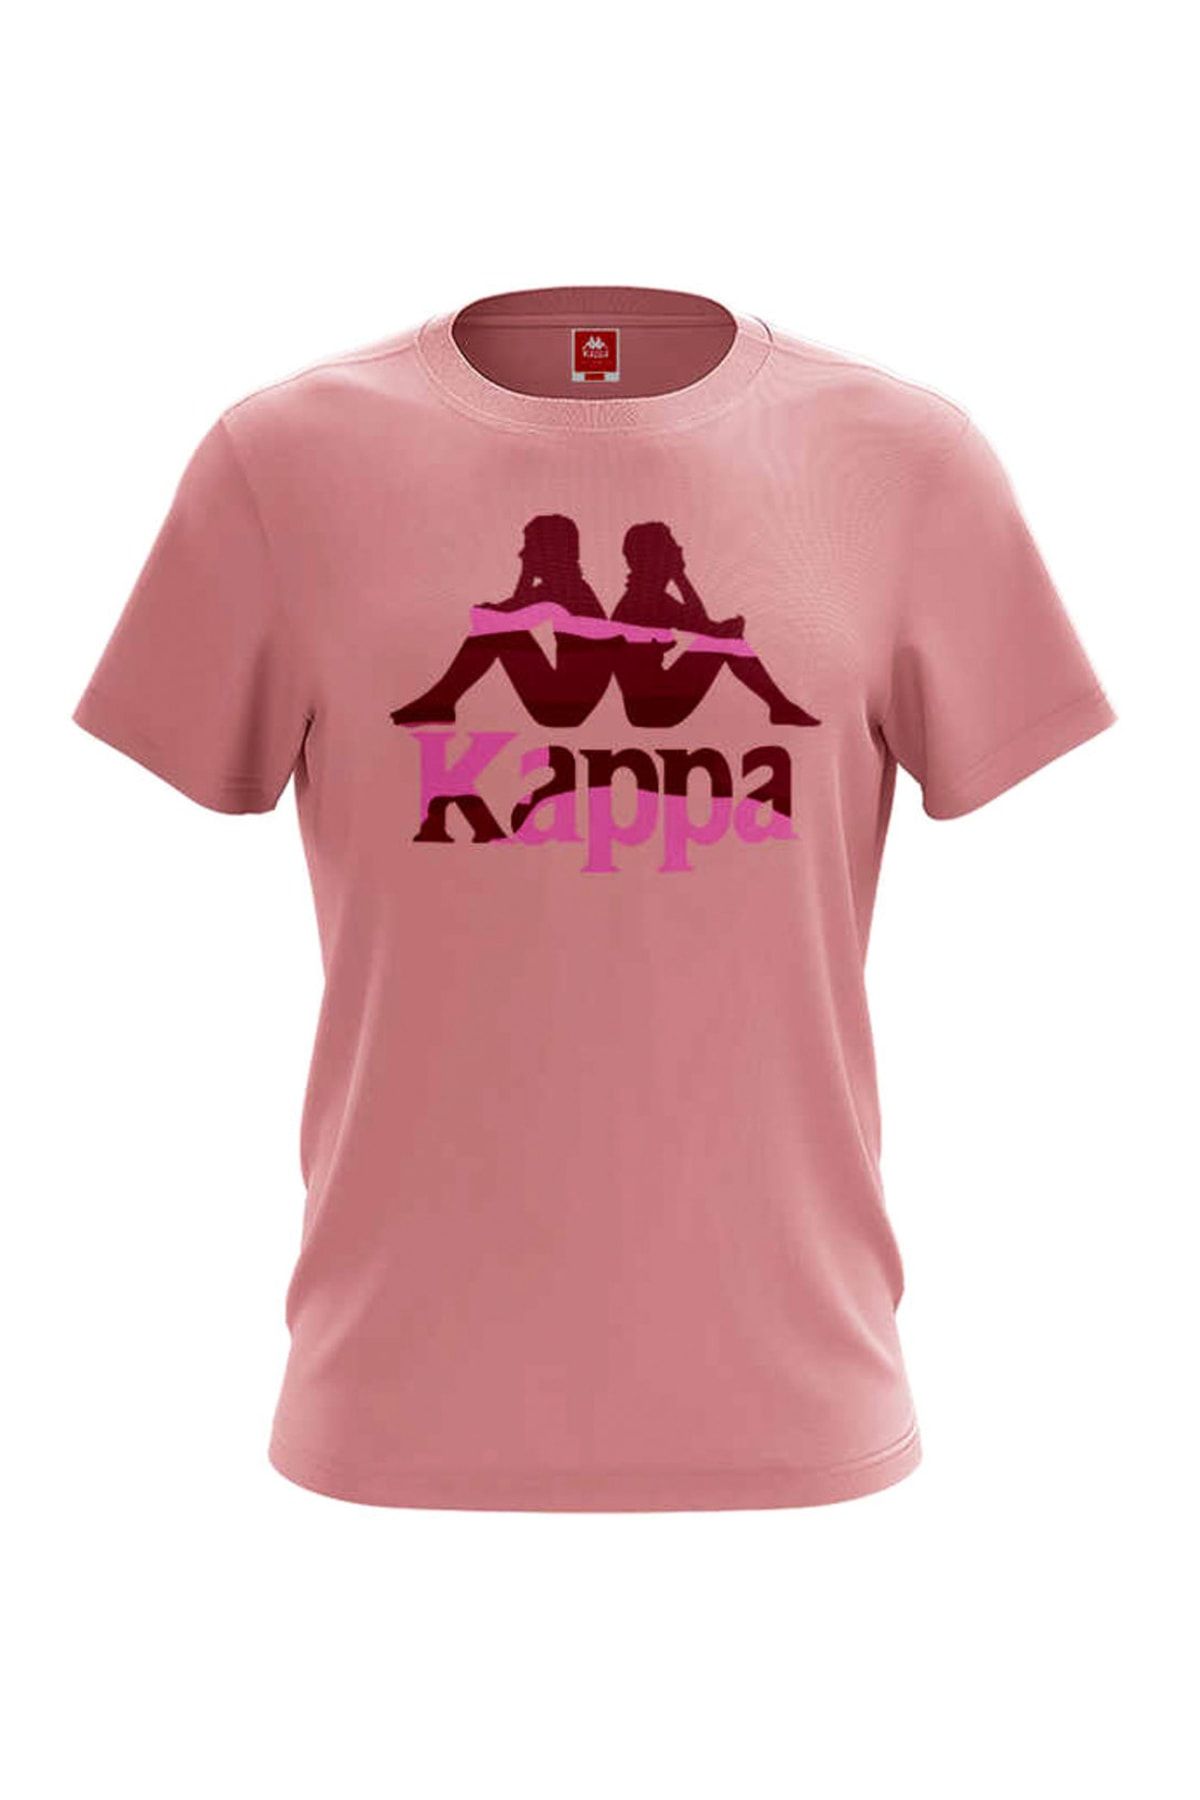 Kappa Kadın Baskılı T-Shirt ZIKSI GÜL KURUSU